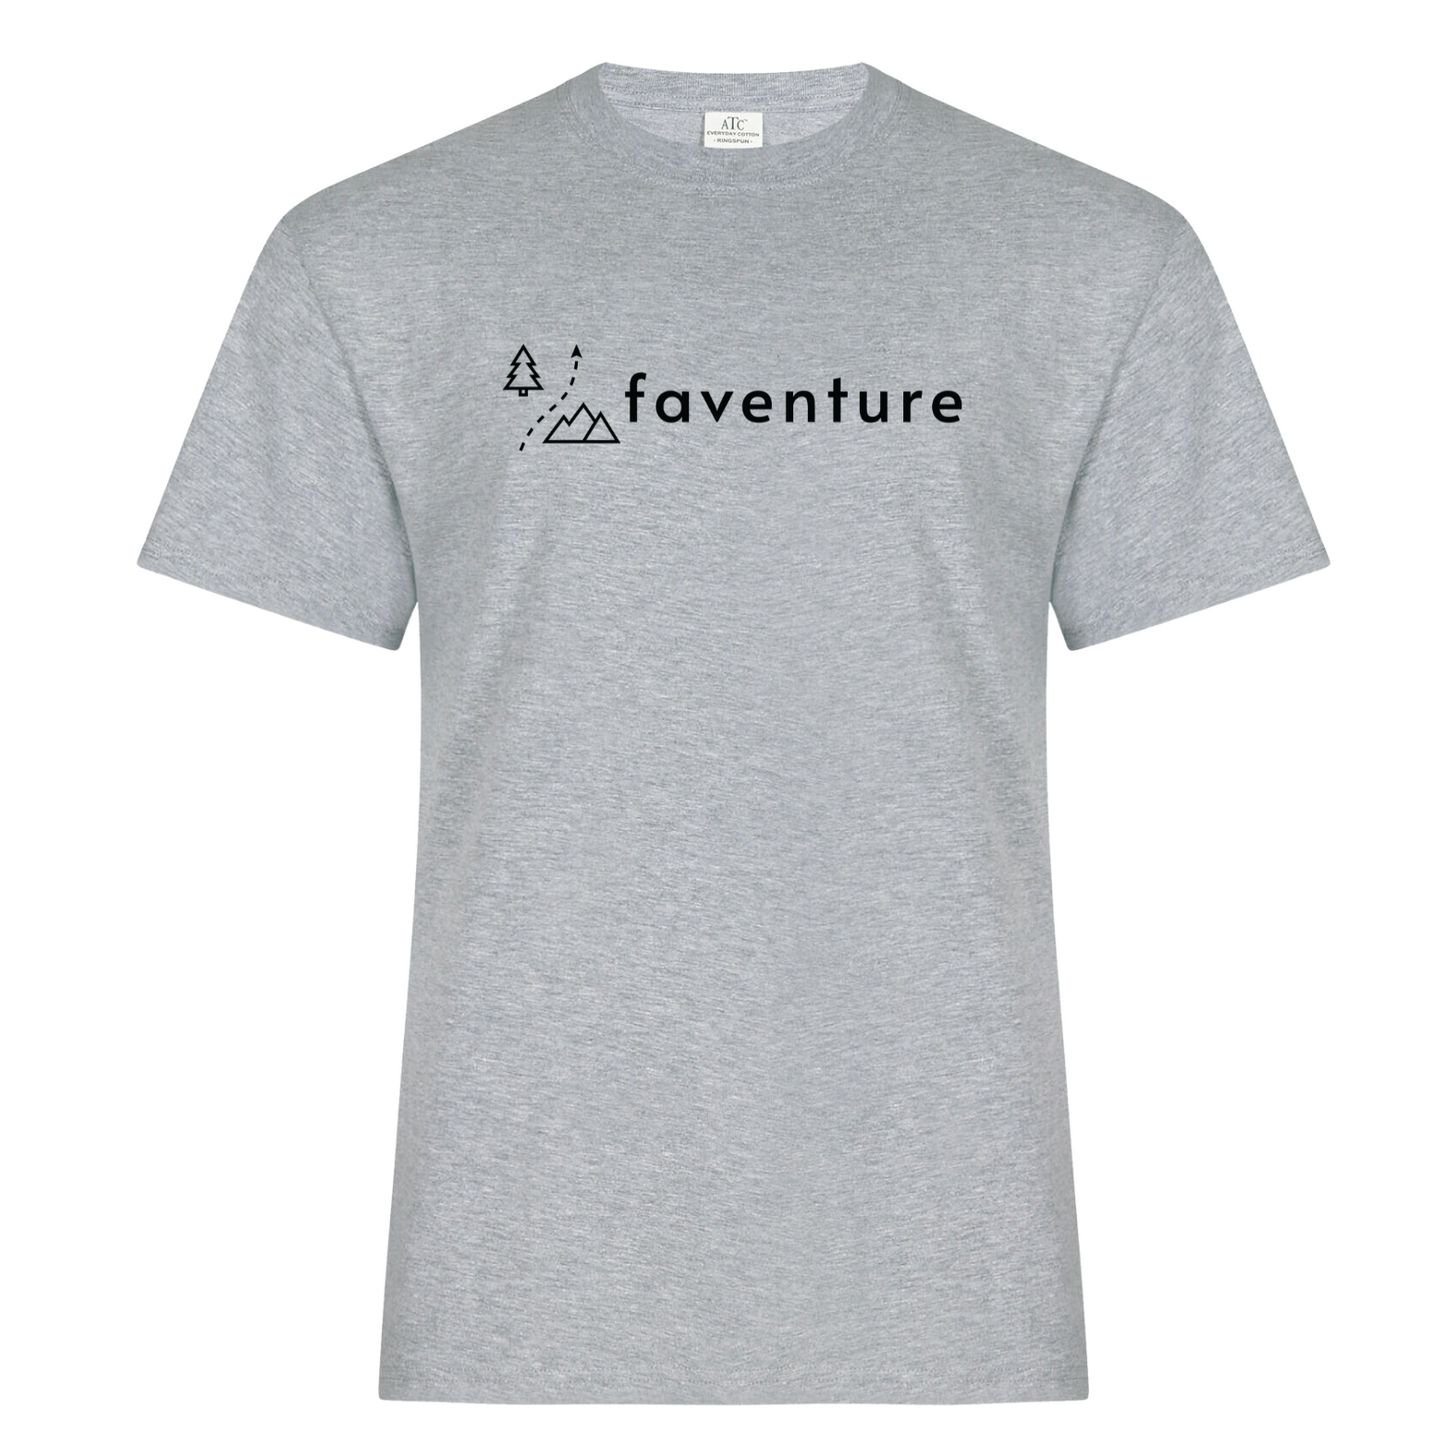 (Faventure) T-shirt